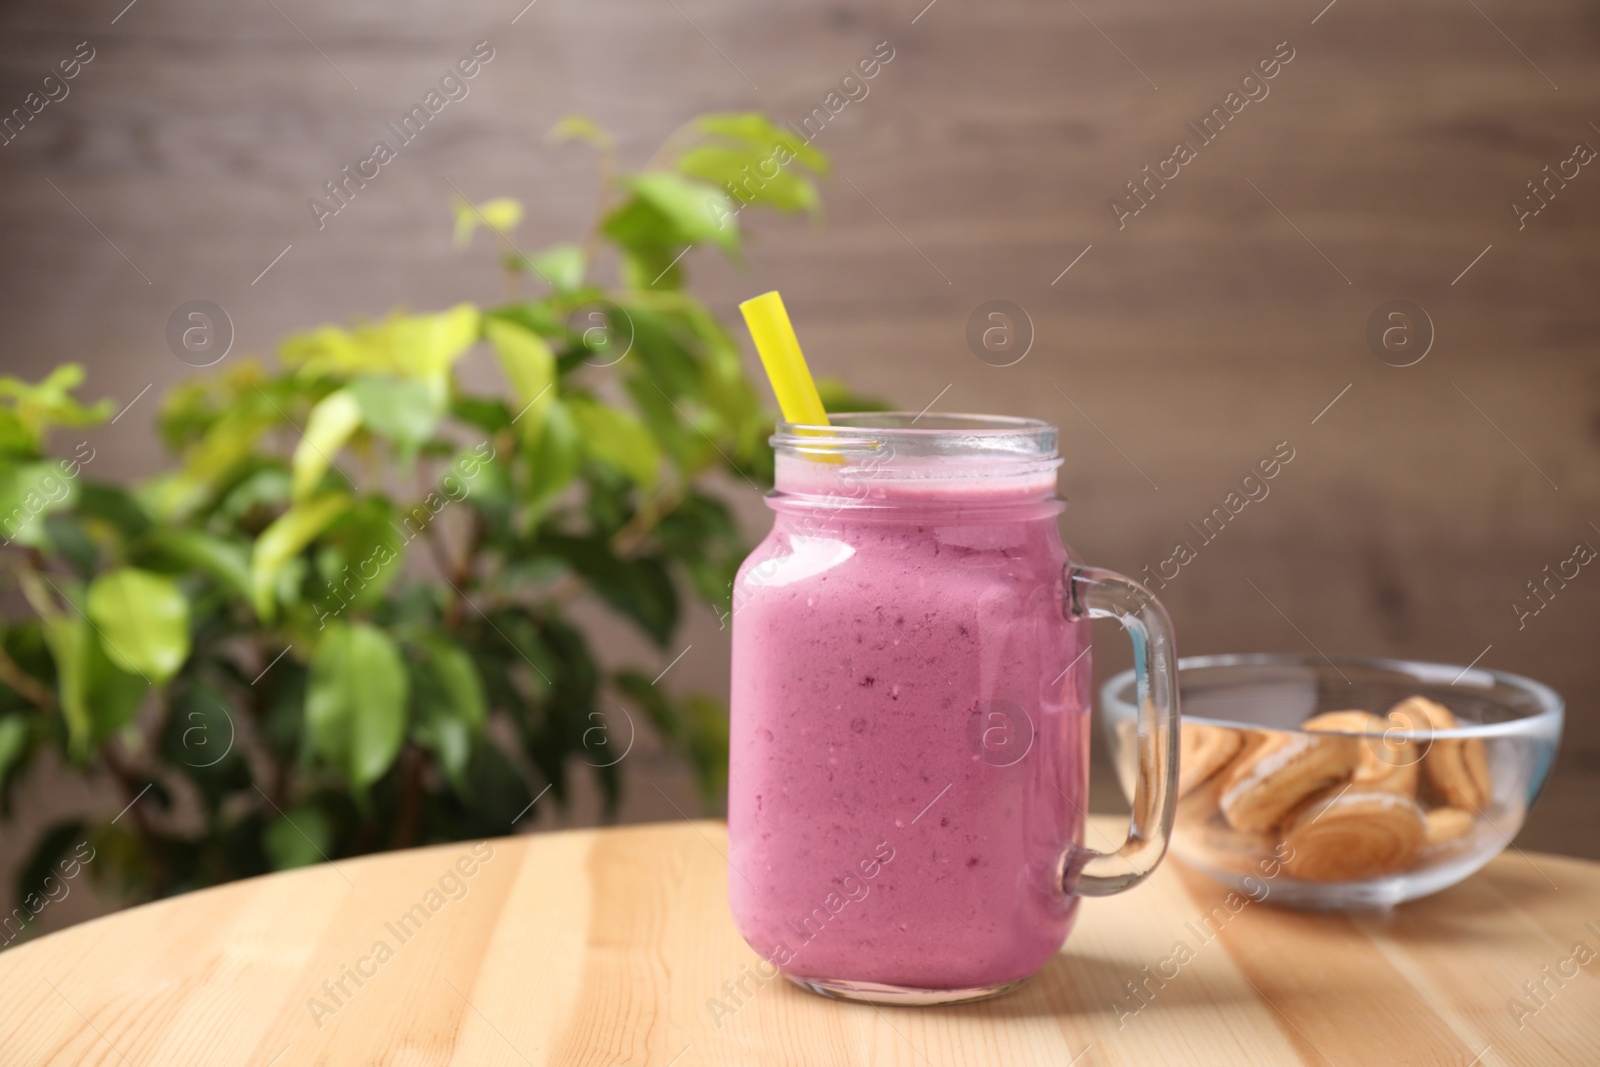 Photo of Tasty milk shake on wooden table indoors